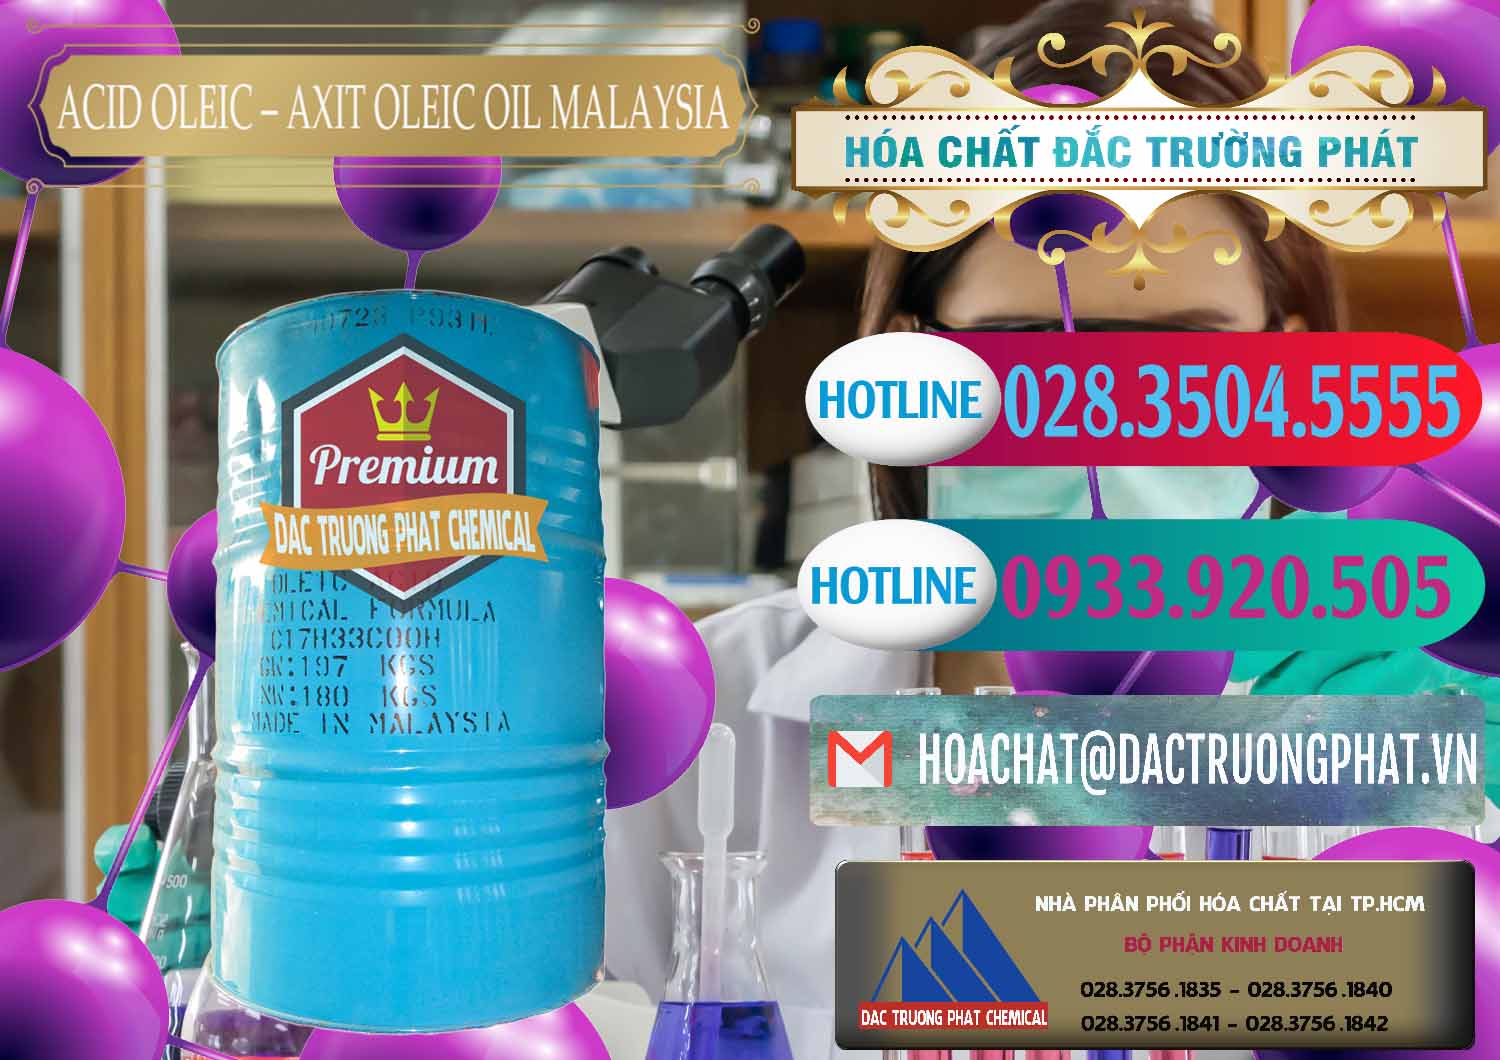 Chuyên bán - cung cấp Acid Oleic – Axit Oleic Oil Malaysia - 0013 - Cty chuyên phân phối - bán hóa chất tại TP.HCM - truongphat.vn